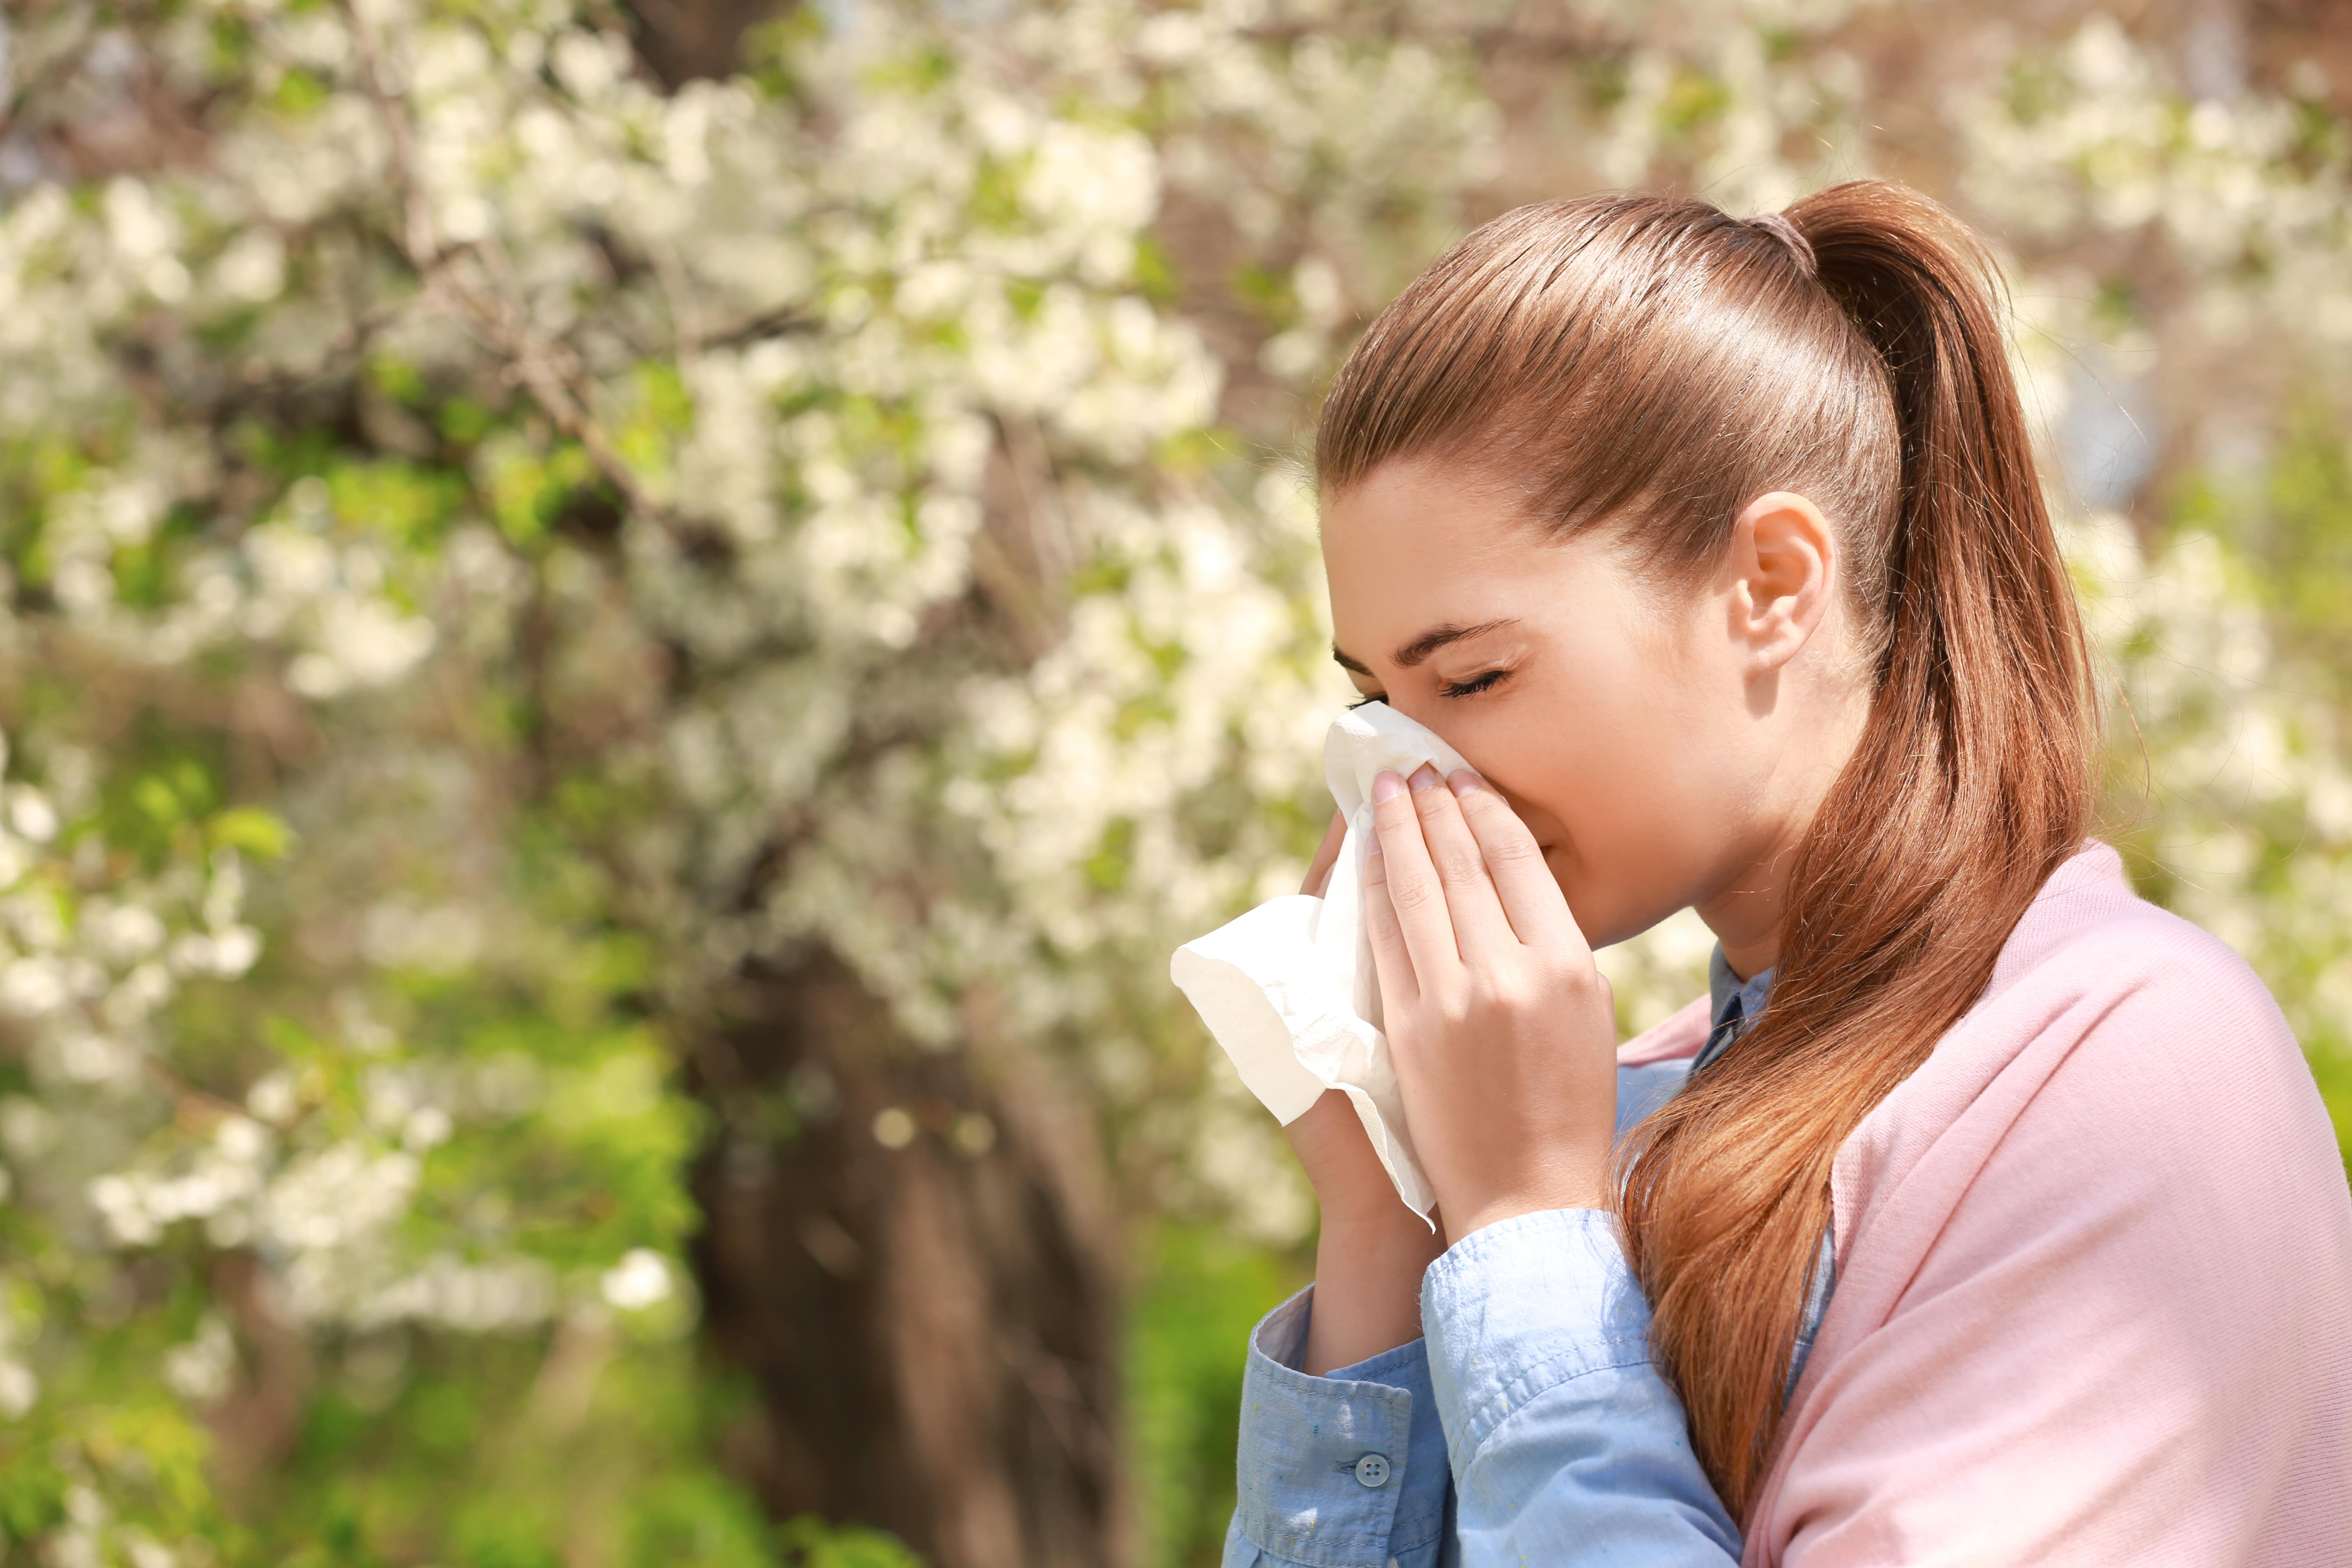 Con la llegada de la época de floración las personas con alergias sufren de estornudos, el escozor en la nariz y el lagrimeo. (Foto Prensa Libre: Shutterstock)